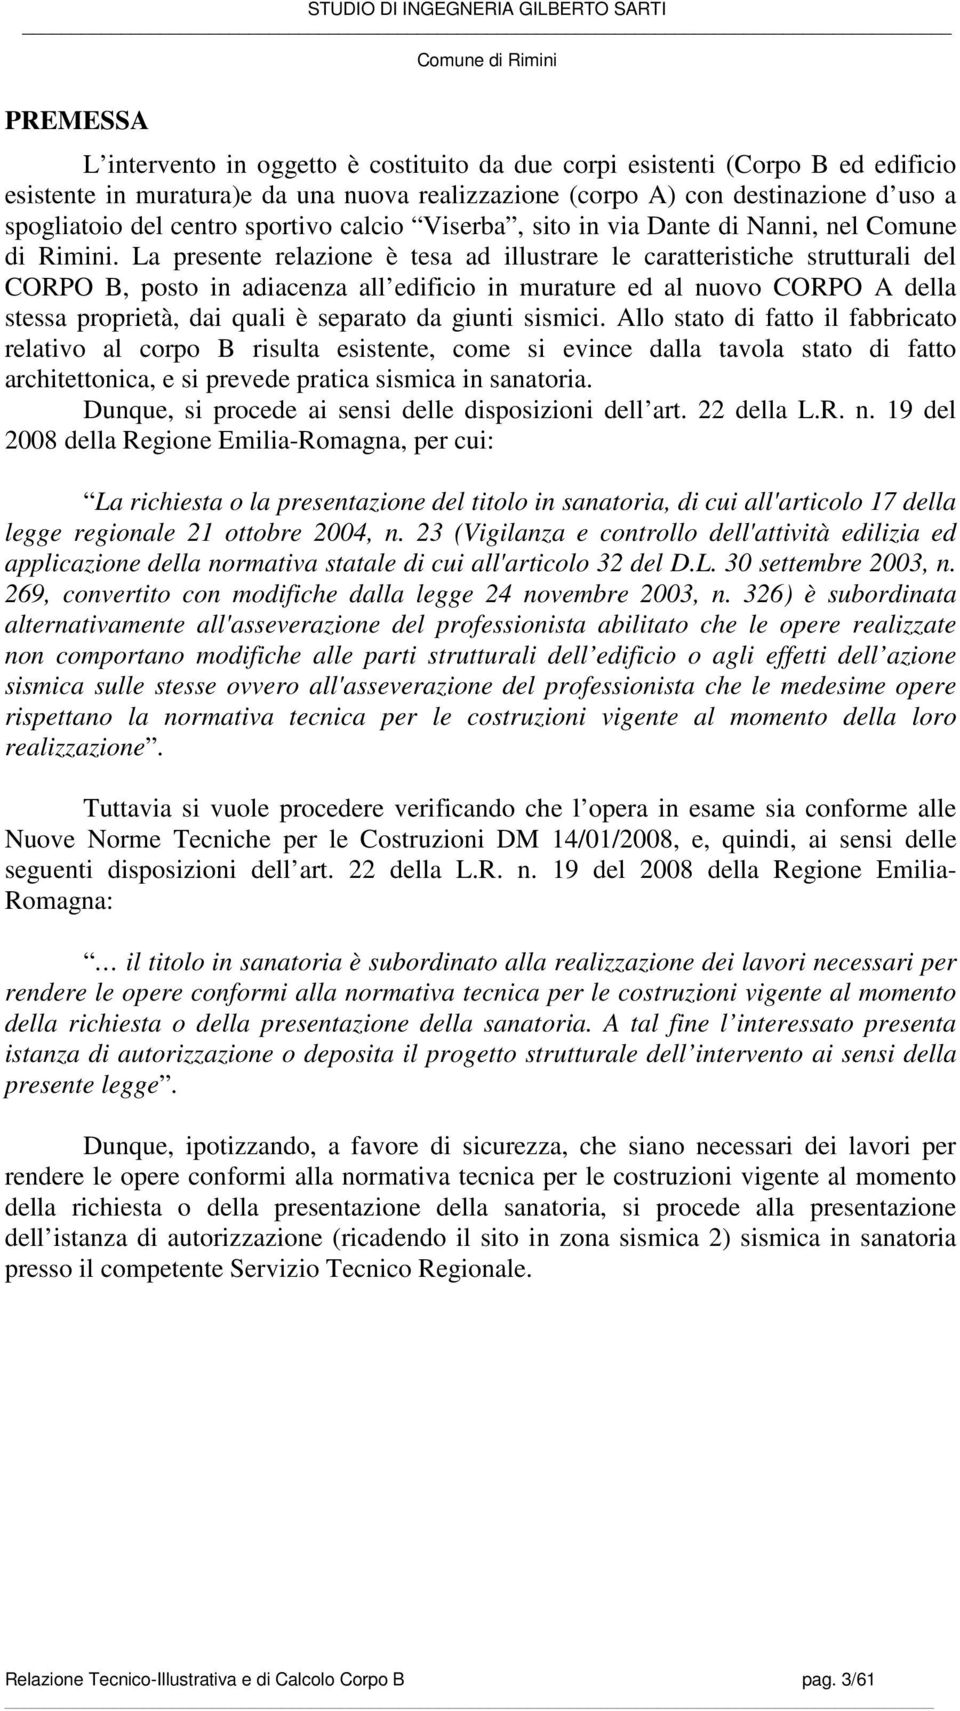 Comune Di Rimini Relazione Tecnico Illustrativa E Di Calcolo Corpo B Sanatoria Pdf Free Download